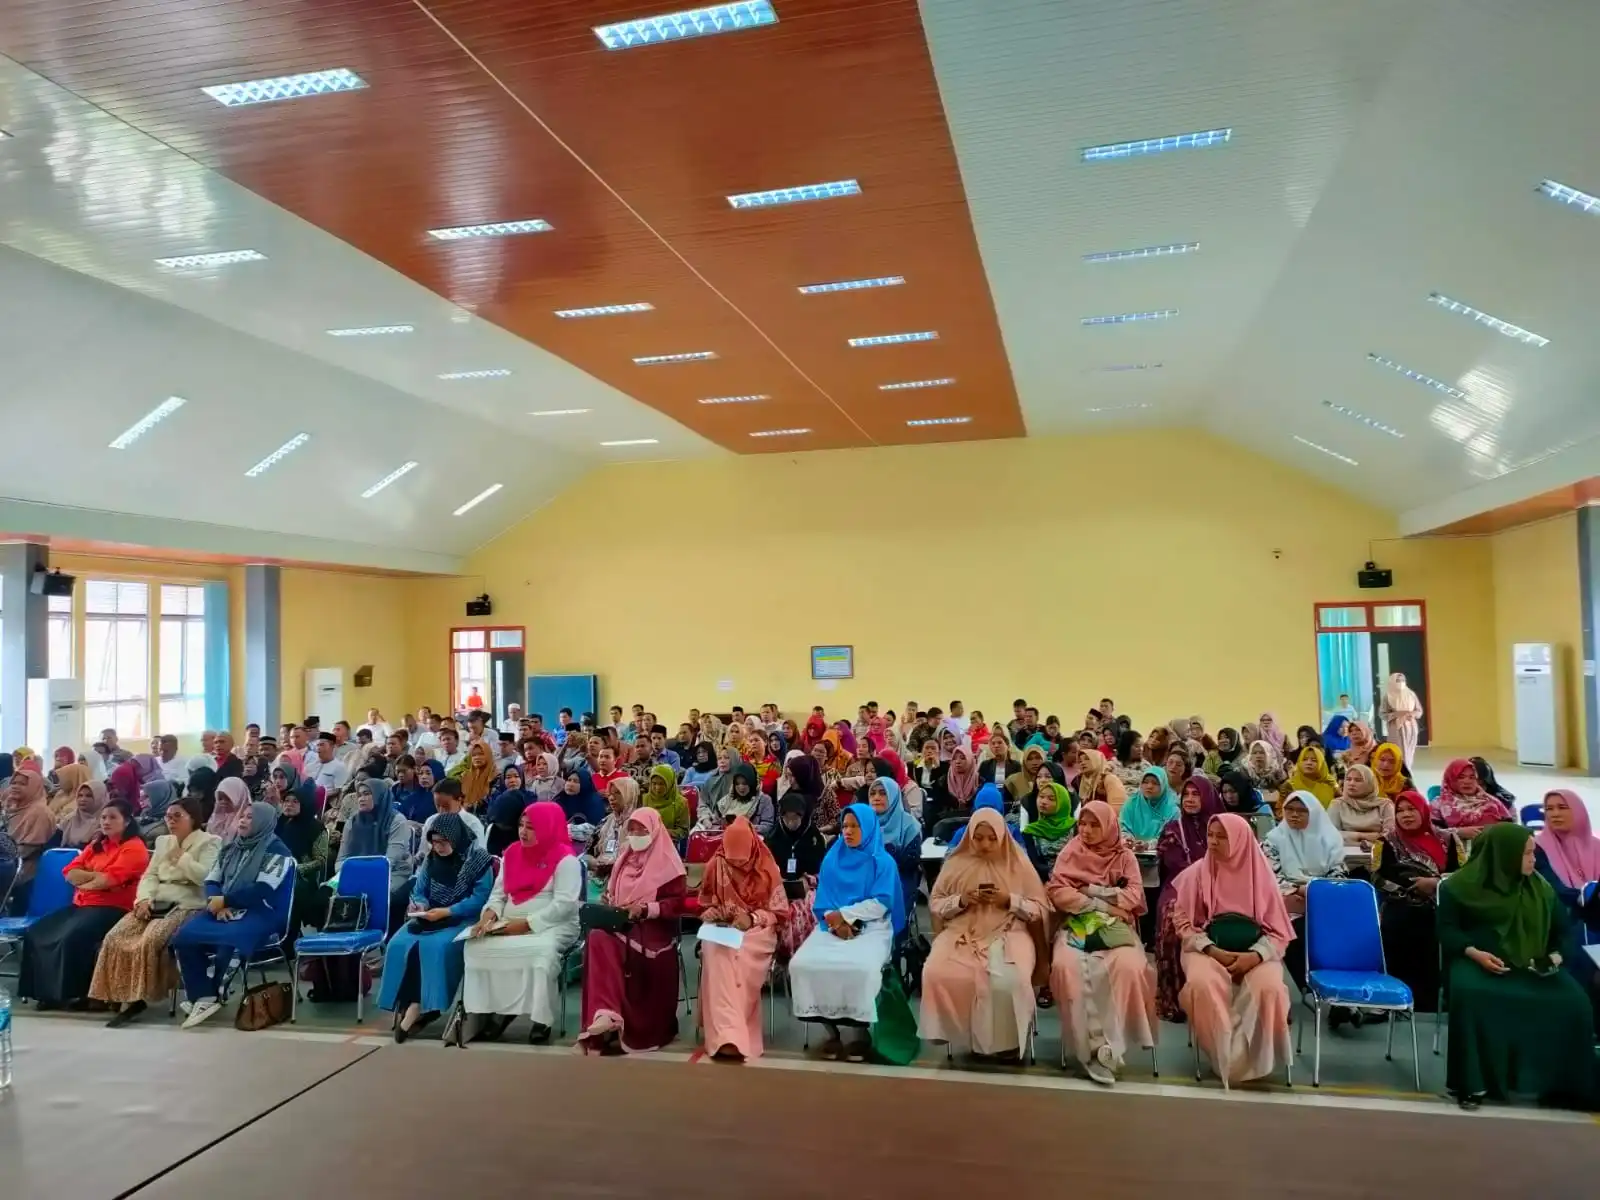 Kepala Balai Guru Penggerak (BGP) Provinsi Aceh, Teti Wahyuni, S.Si., M.Pd. bersama Tim melakukan sosialisasi pendaftaran Calon Guru Penggerak (CGP) untuk angkatan 8, 9, dan 10 di Kabupaten Aceh Tenggara pada hari Jumat (30/09/2022).